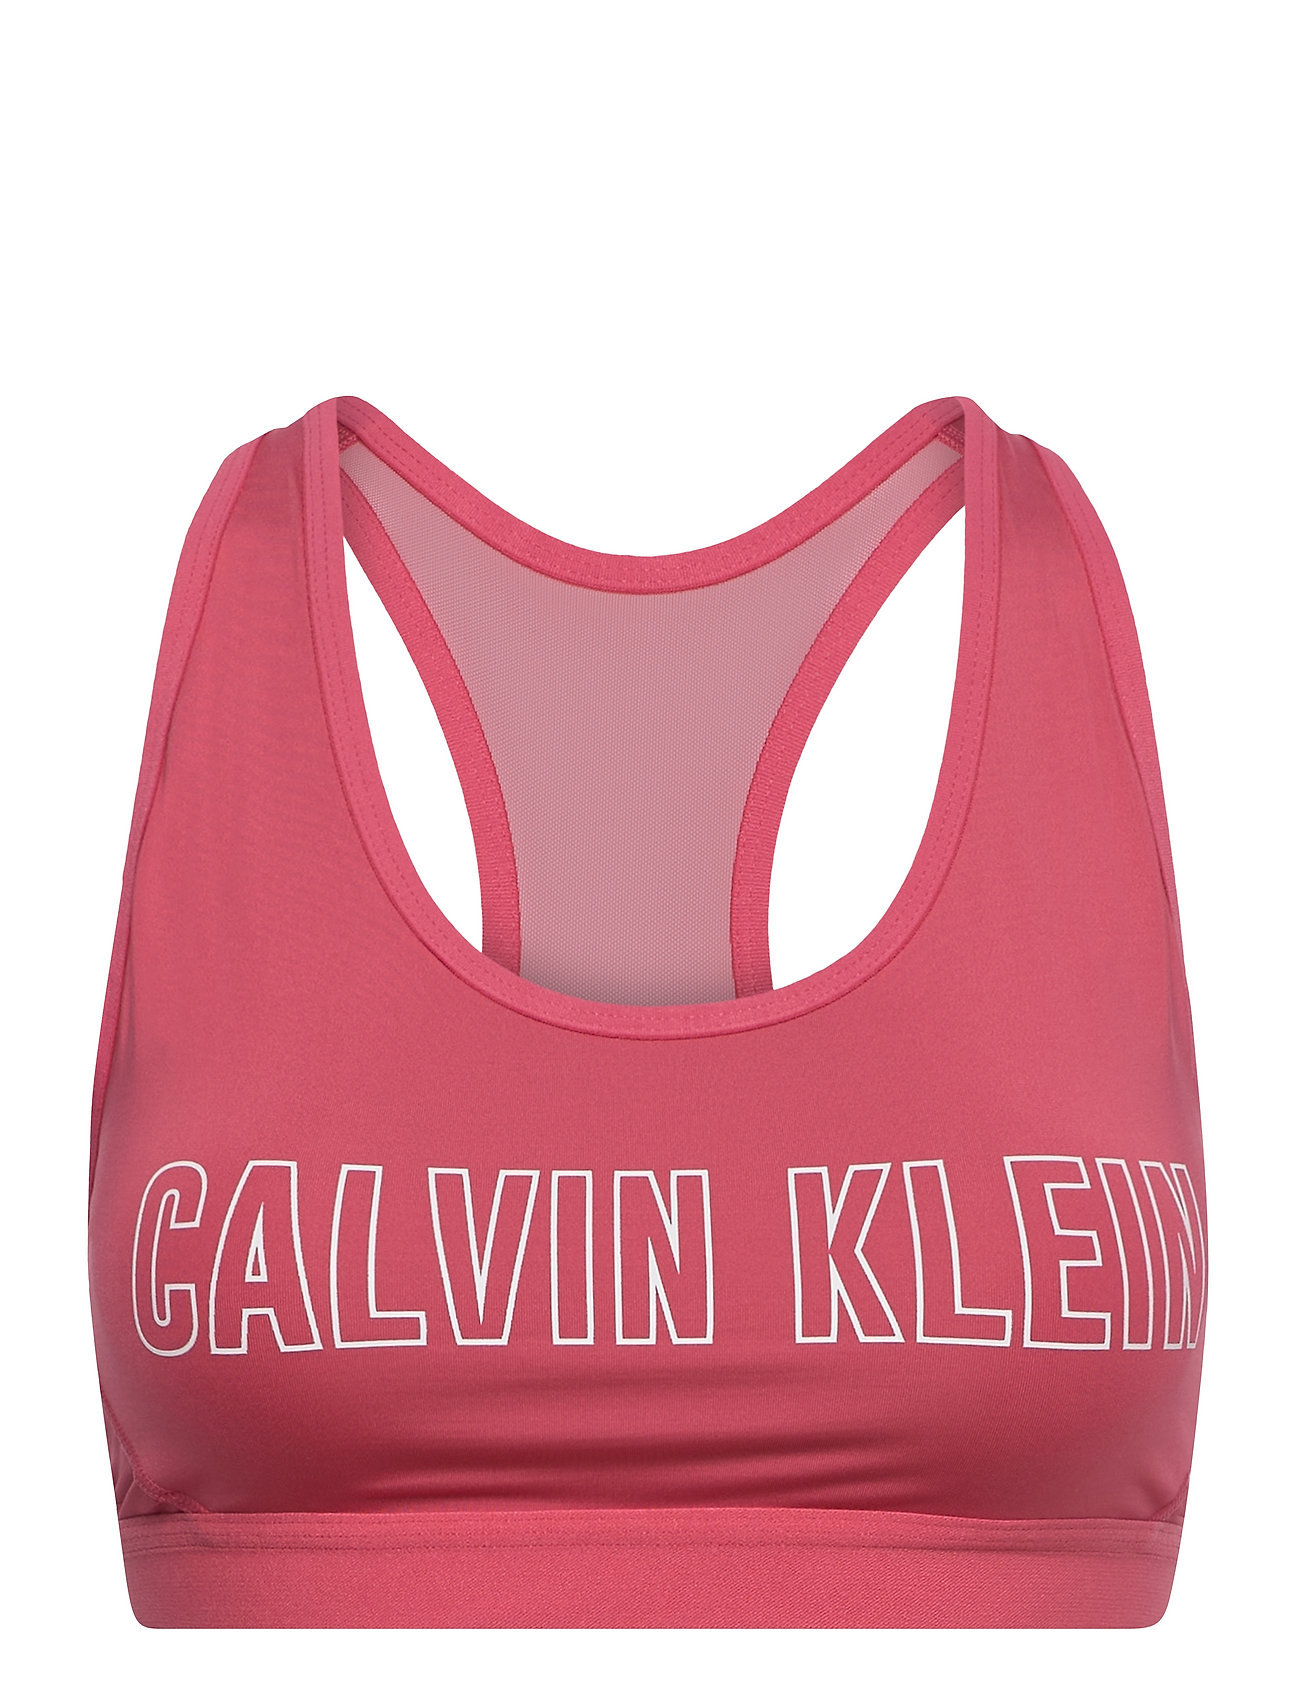 Calvin Klein Performance High Compression Sports Bra – bras – shop